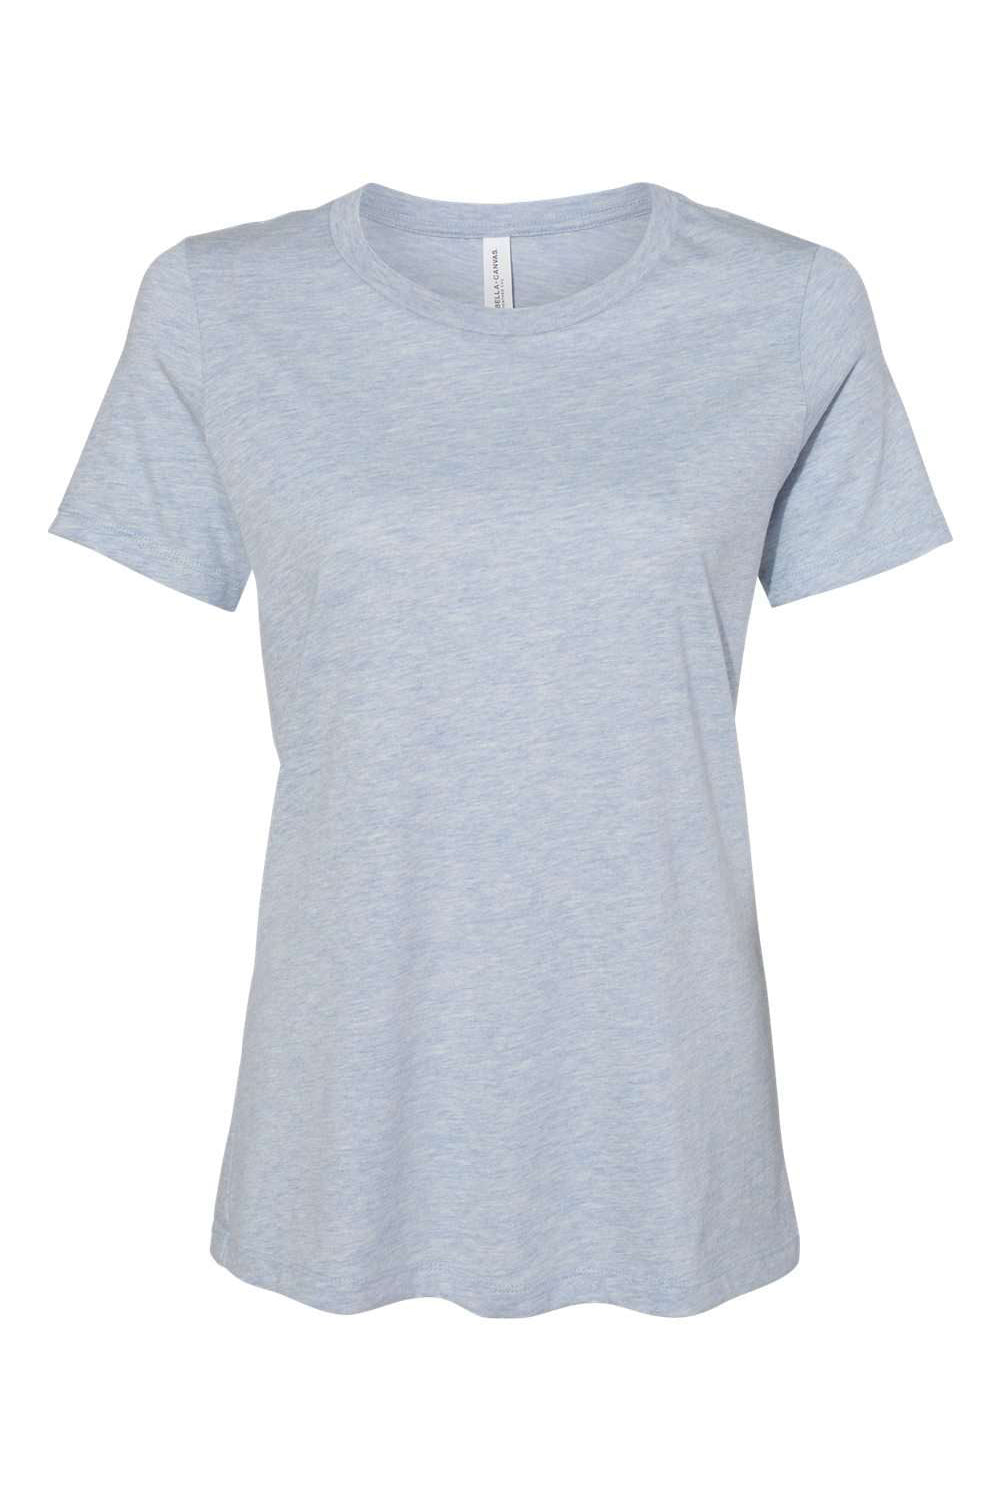 Bella + Canvas BC6400CVC/6400CVC Womens CVC Short Sleeve Crewneck T-Shirt Heather Prism Blue Flat Front